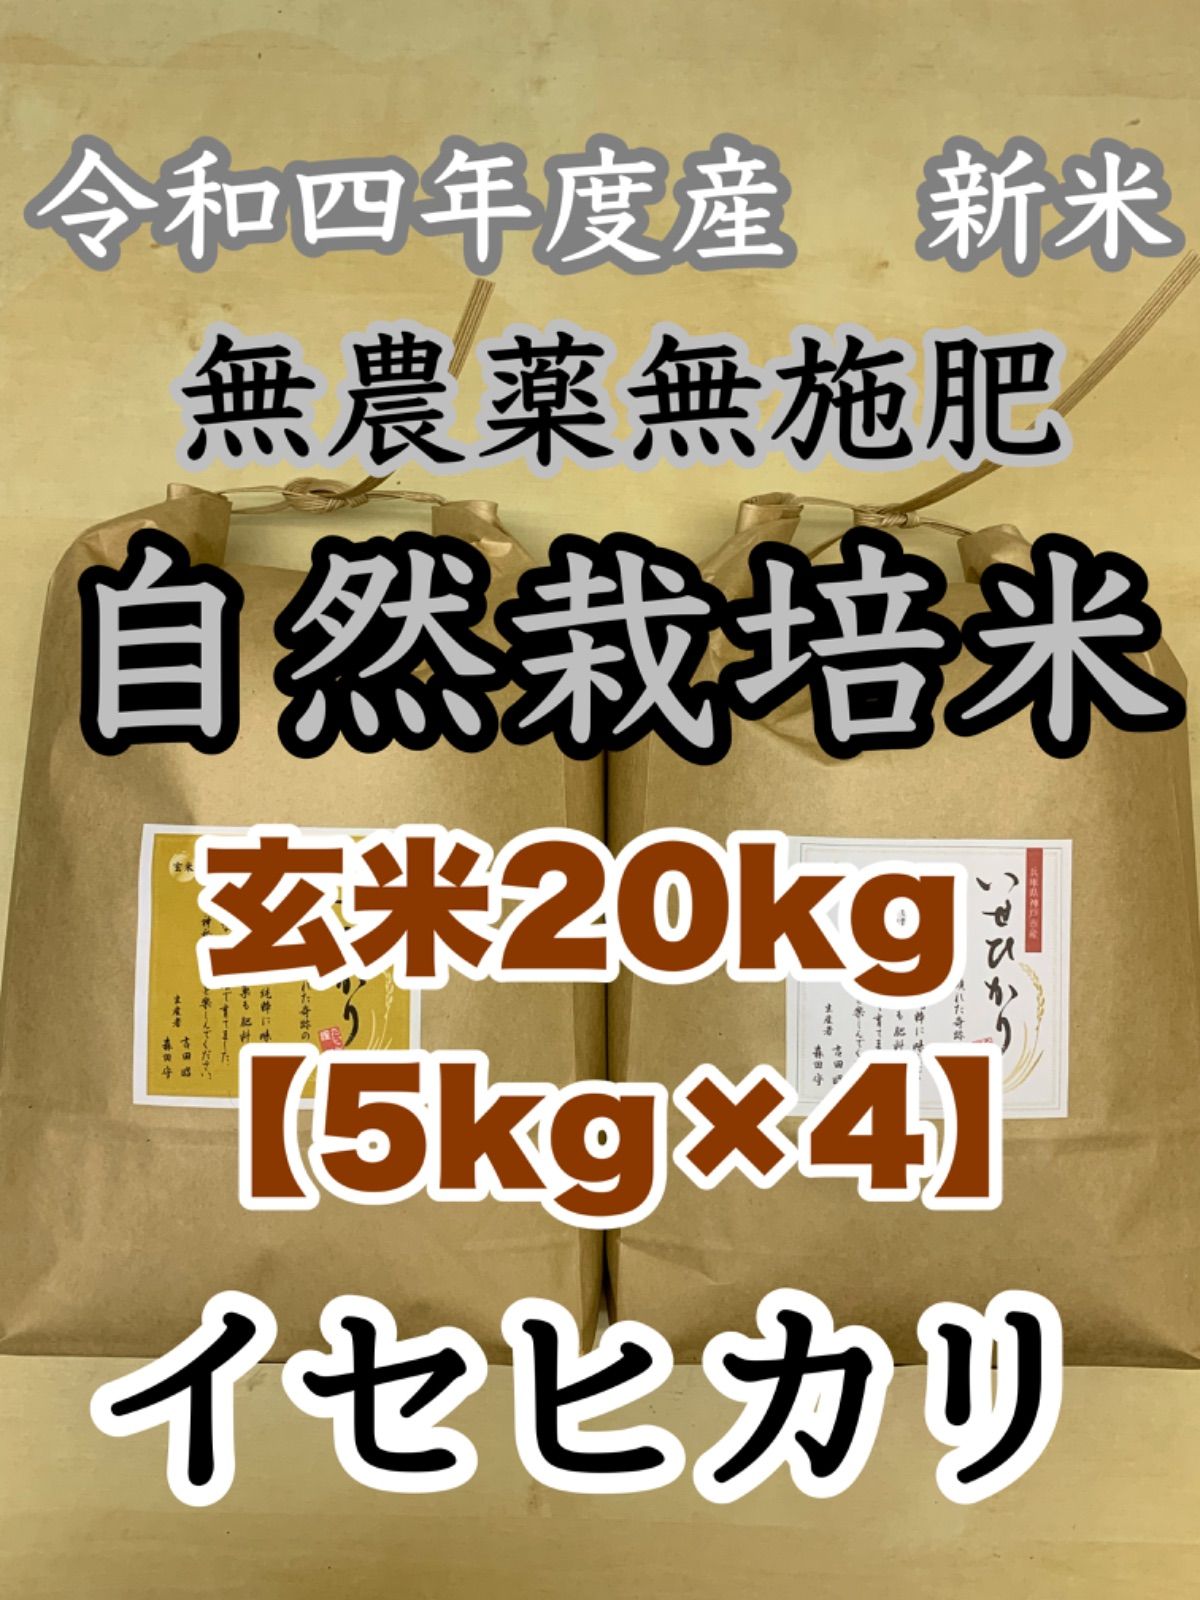 イセヒカリ】玄米20kg 新米 令和4年度兵庫県産 無農薬無施肥の自然栽培米-